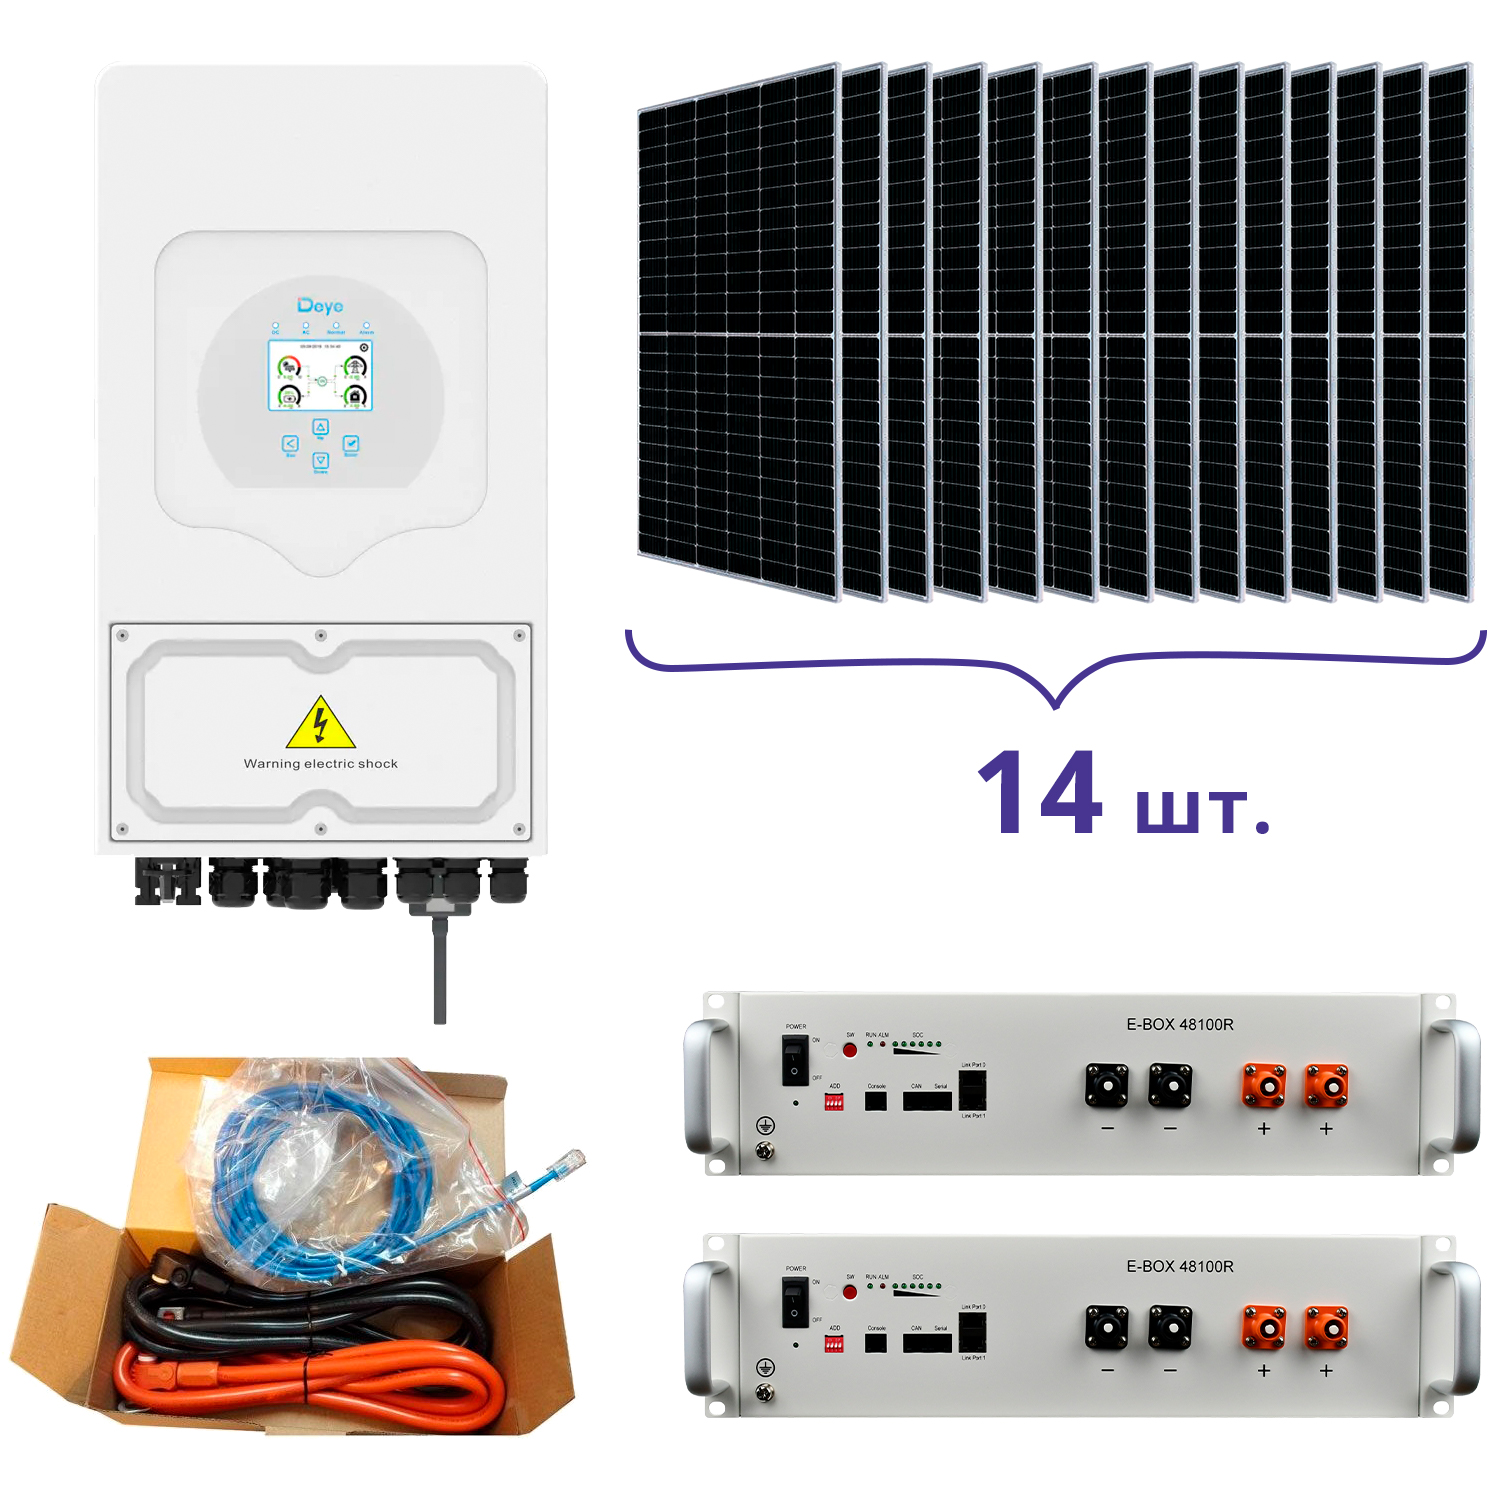 Відгуки система резервного живлення Deye SUN-5K-SG03LP1-EU+Pytes E-BOX-48100R-2шт.+Battery Cable Kit-1шт.+JA Solar JAM72S20-460/MR 460 Wp, Mono-14шт. в Україні